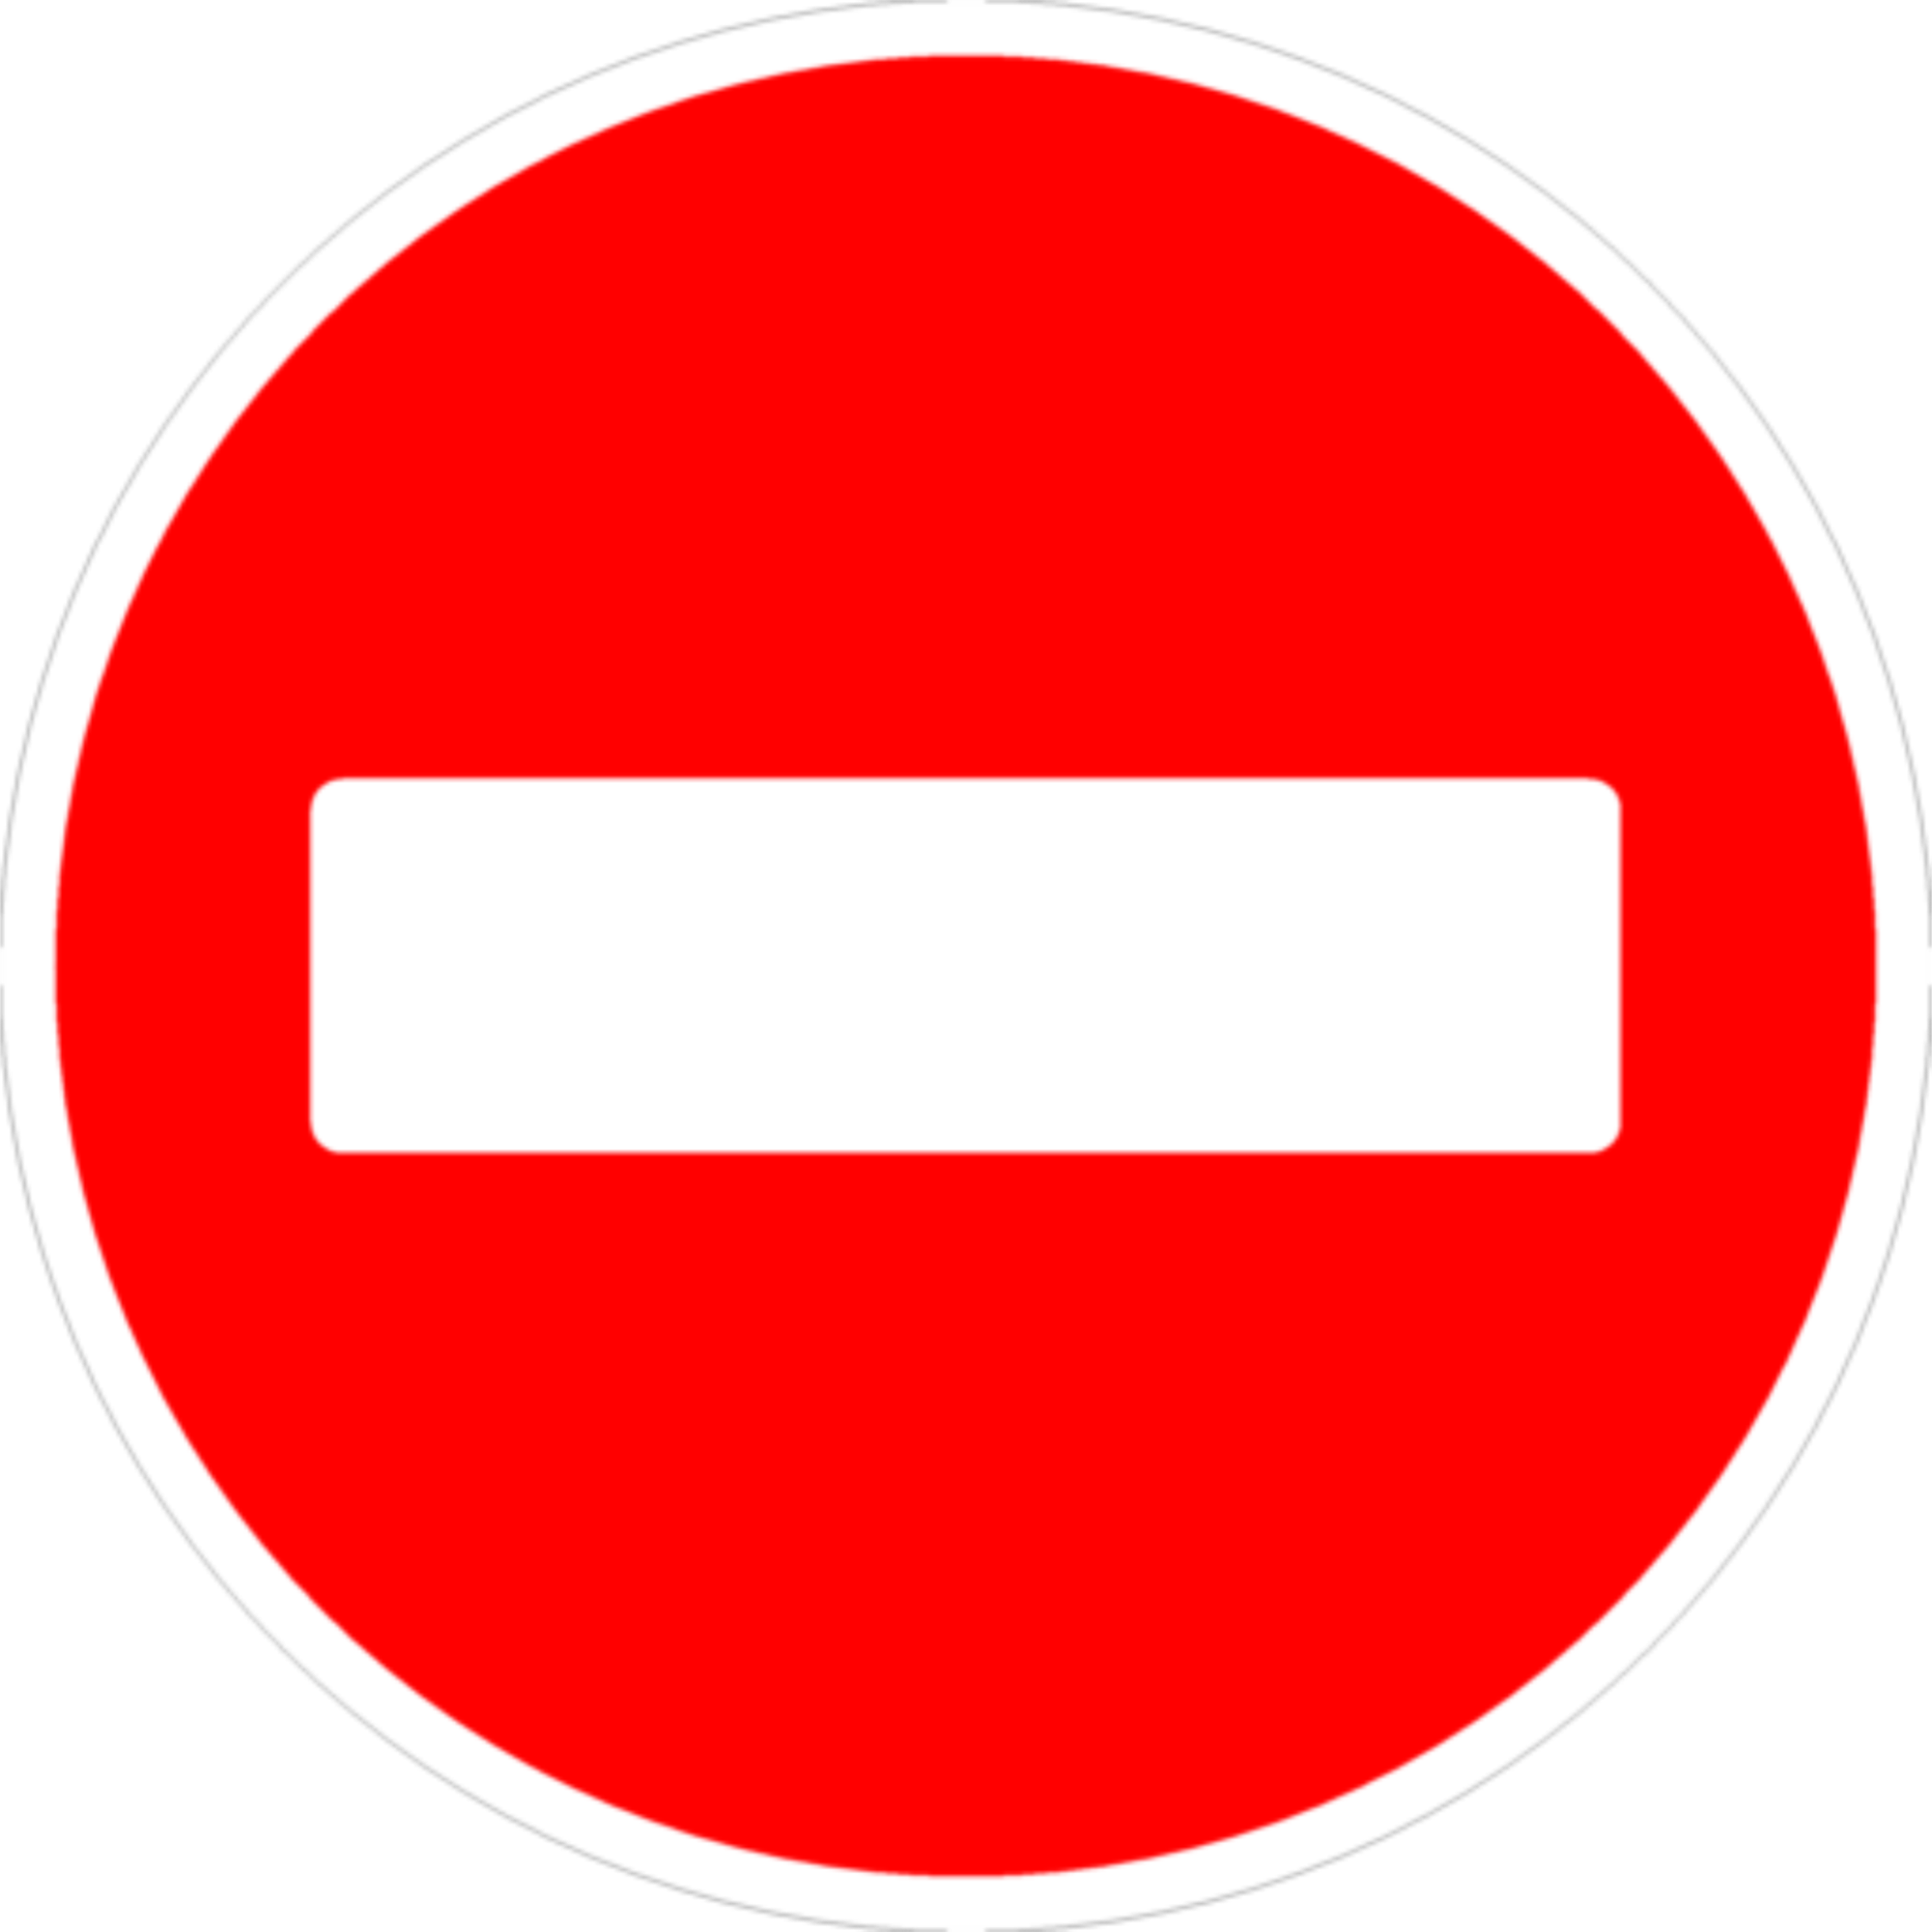 Дорожный знак 3.1 "Въезд запрещен" , типоразмер 3 (D700) световозвращающая пленка класс Ia (круг)